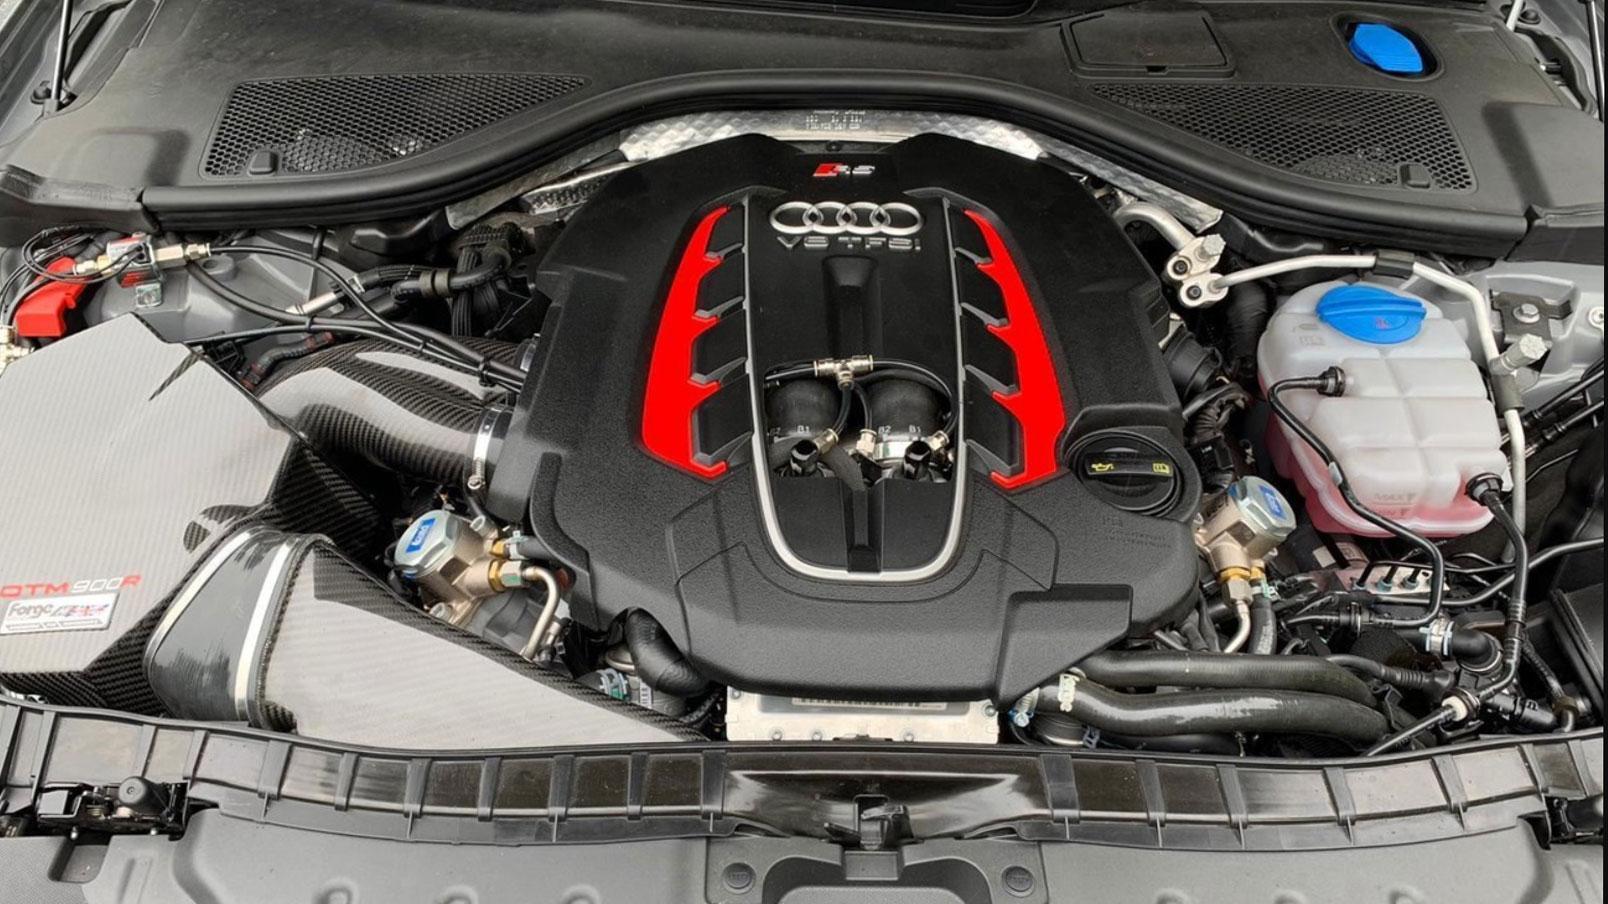 Audi RS 6 met 1.000 pk